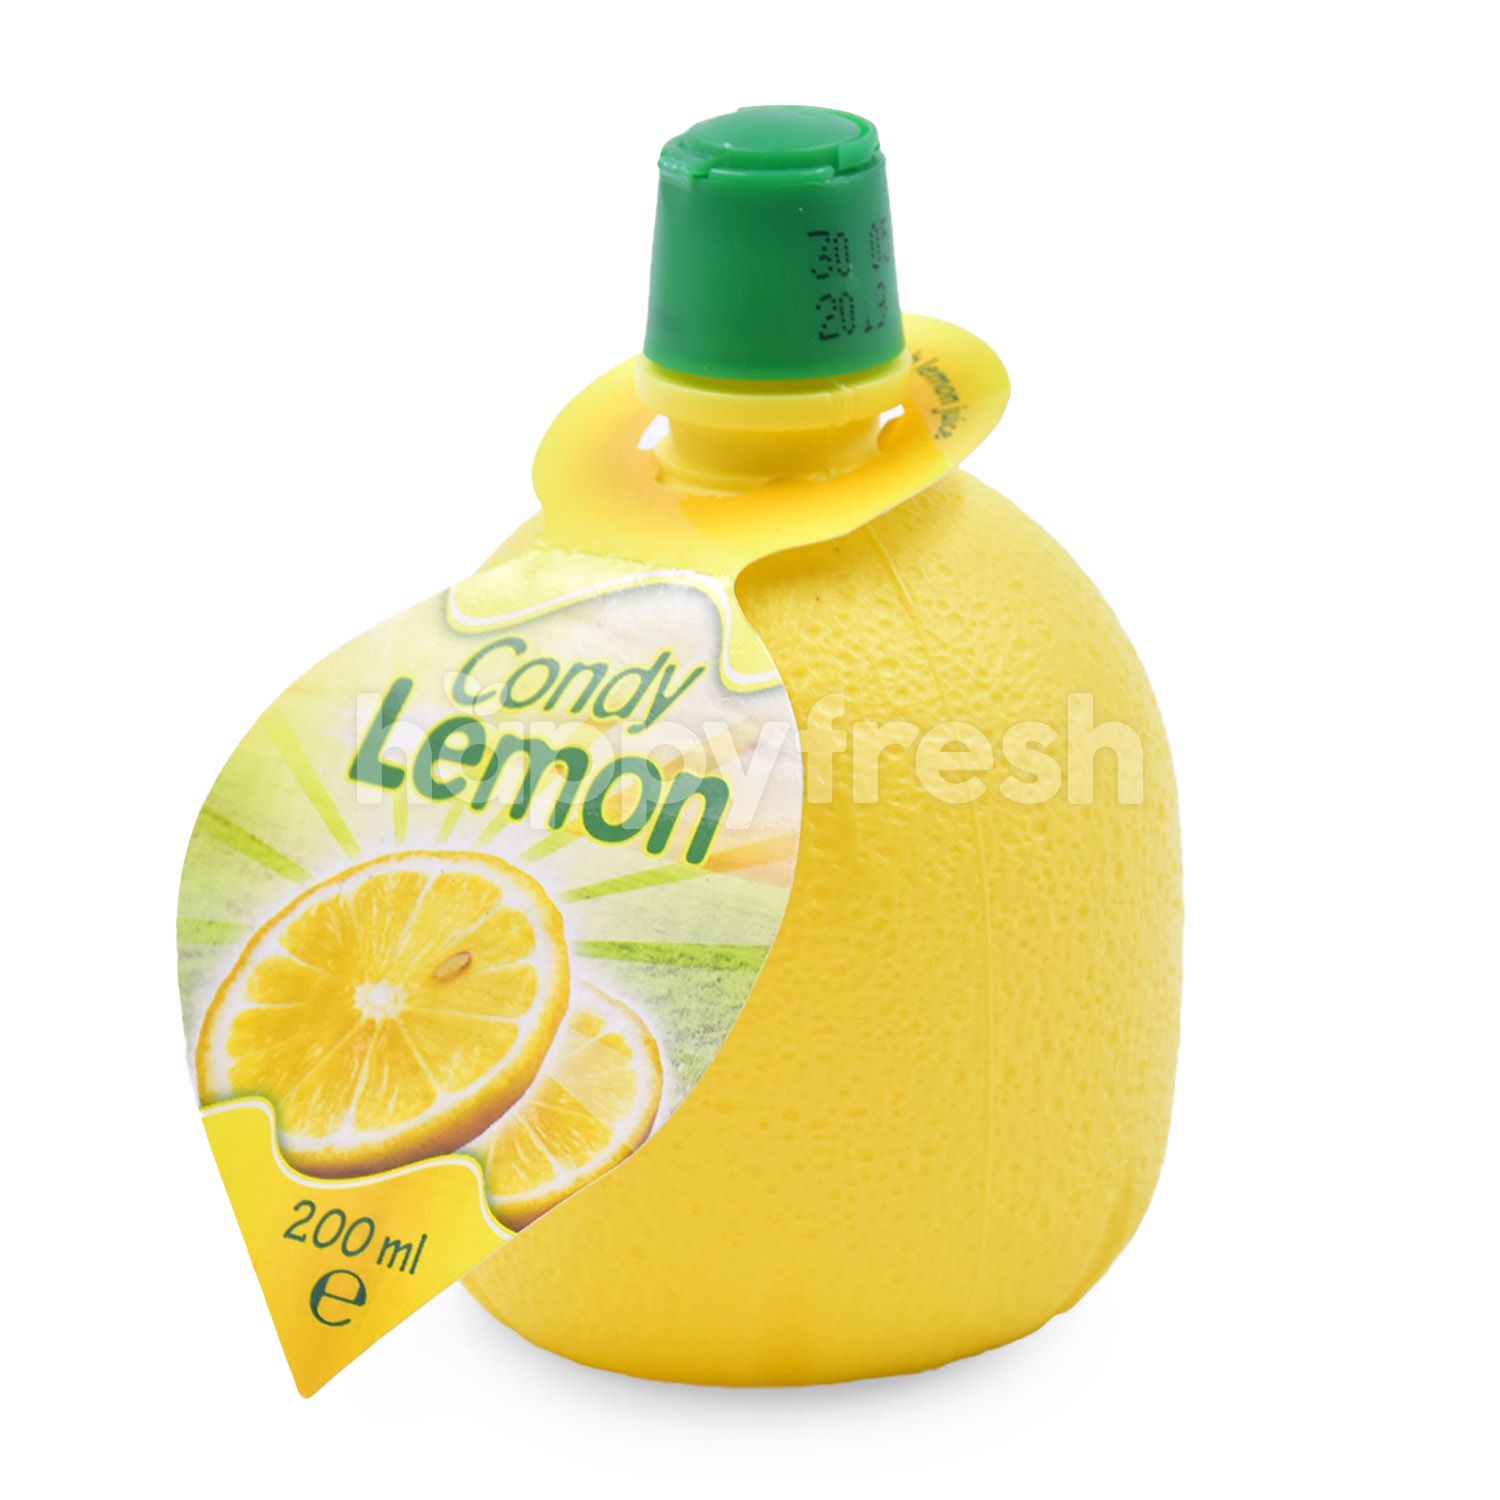 Концентрат лимона. Сок лимона Condy 200 мл. Лимонный концентрат. Концентрат лимонного сока. Condy лимонный.